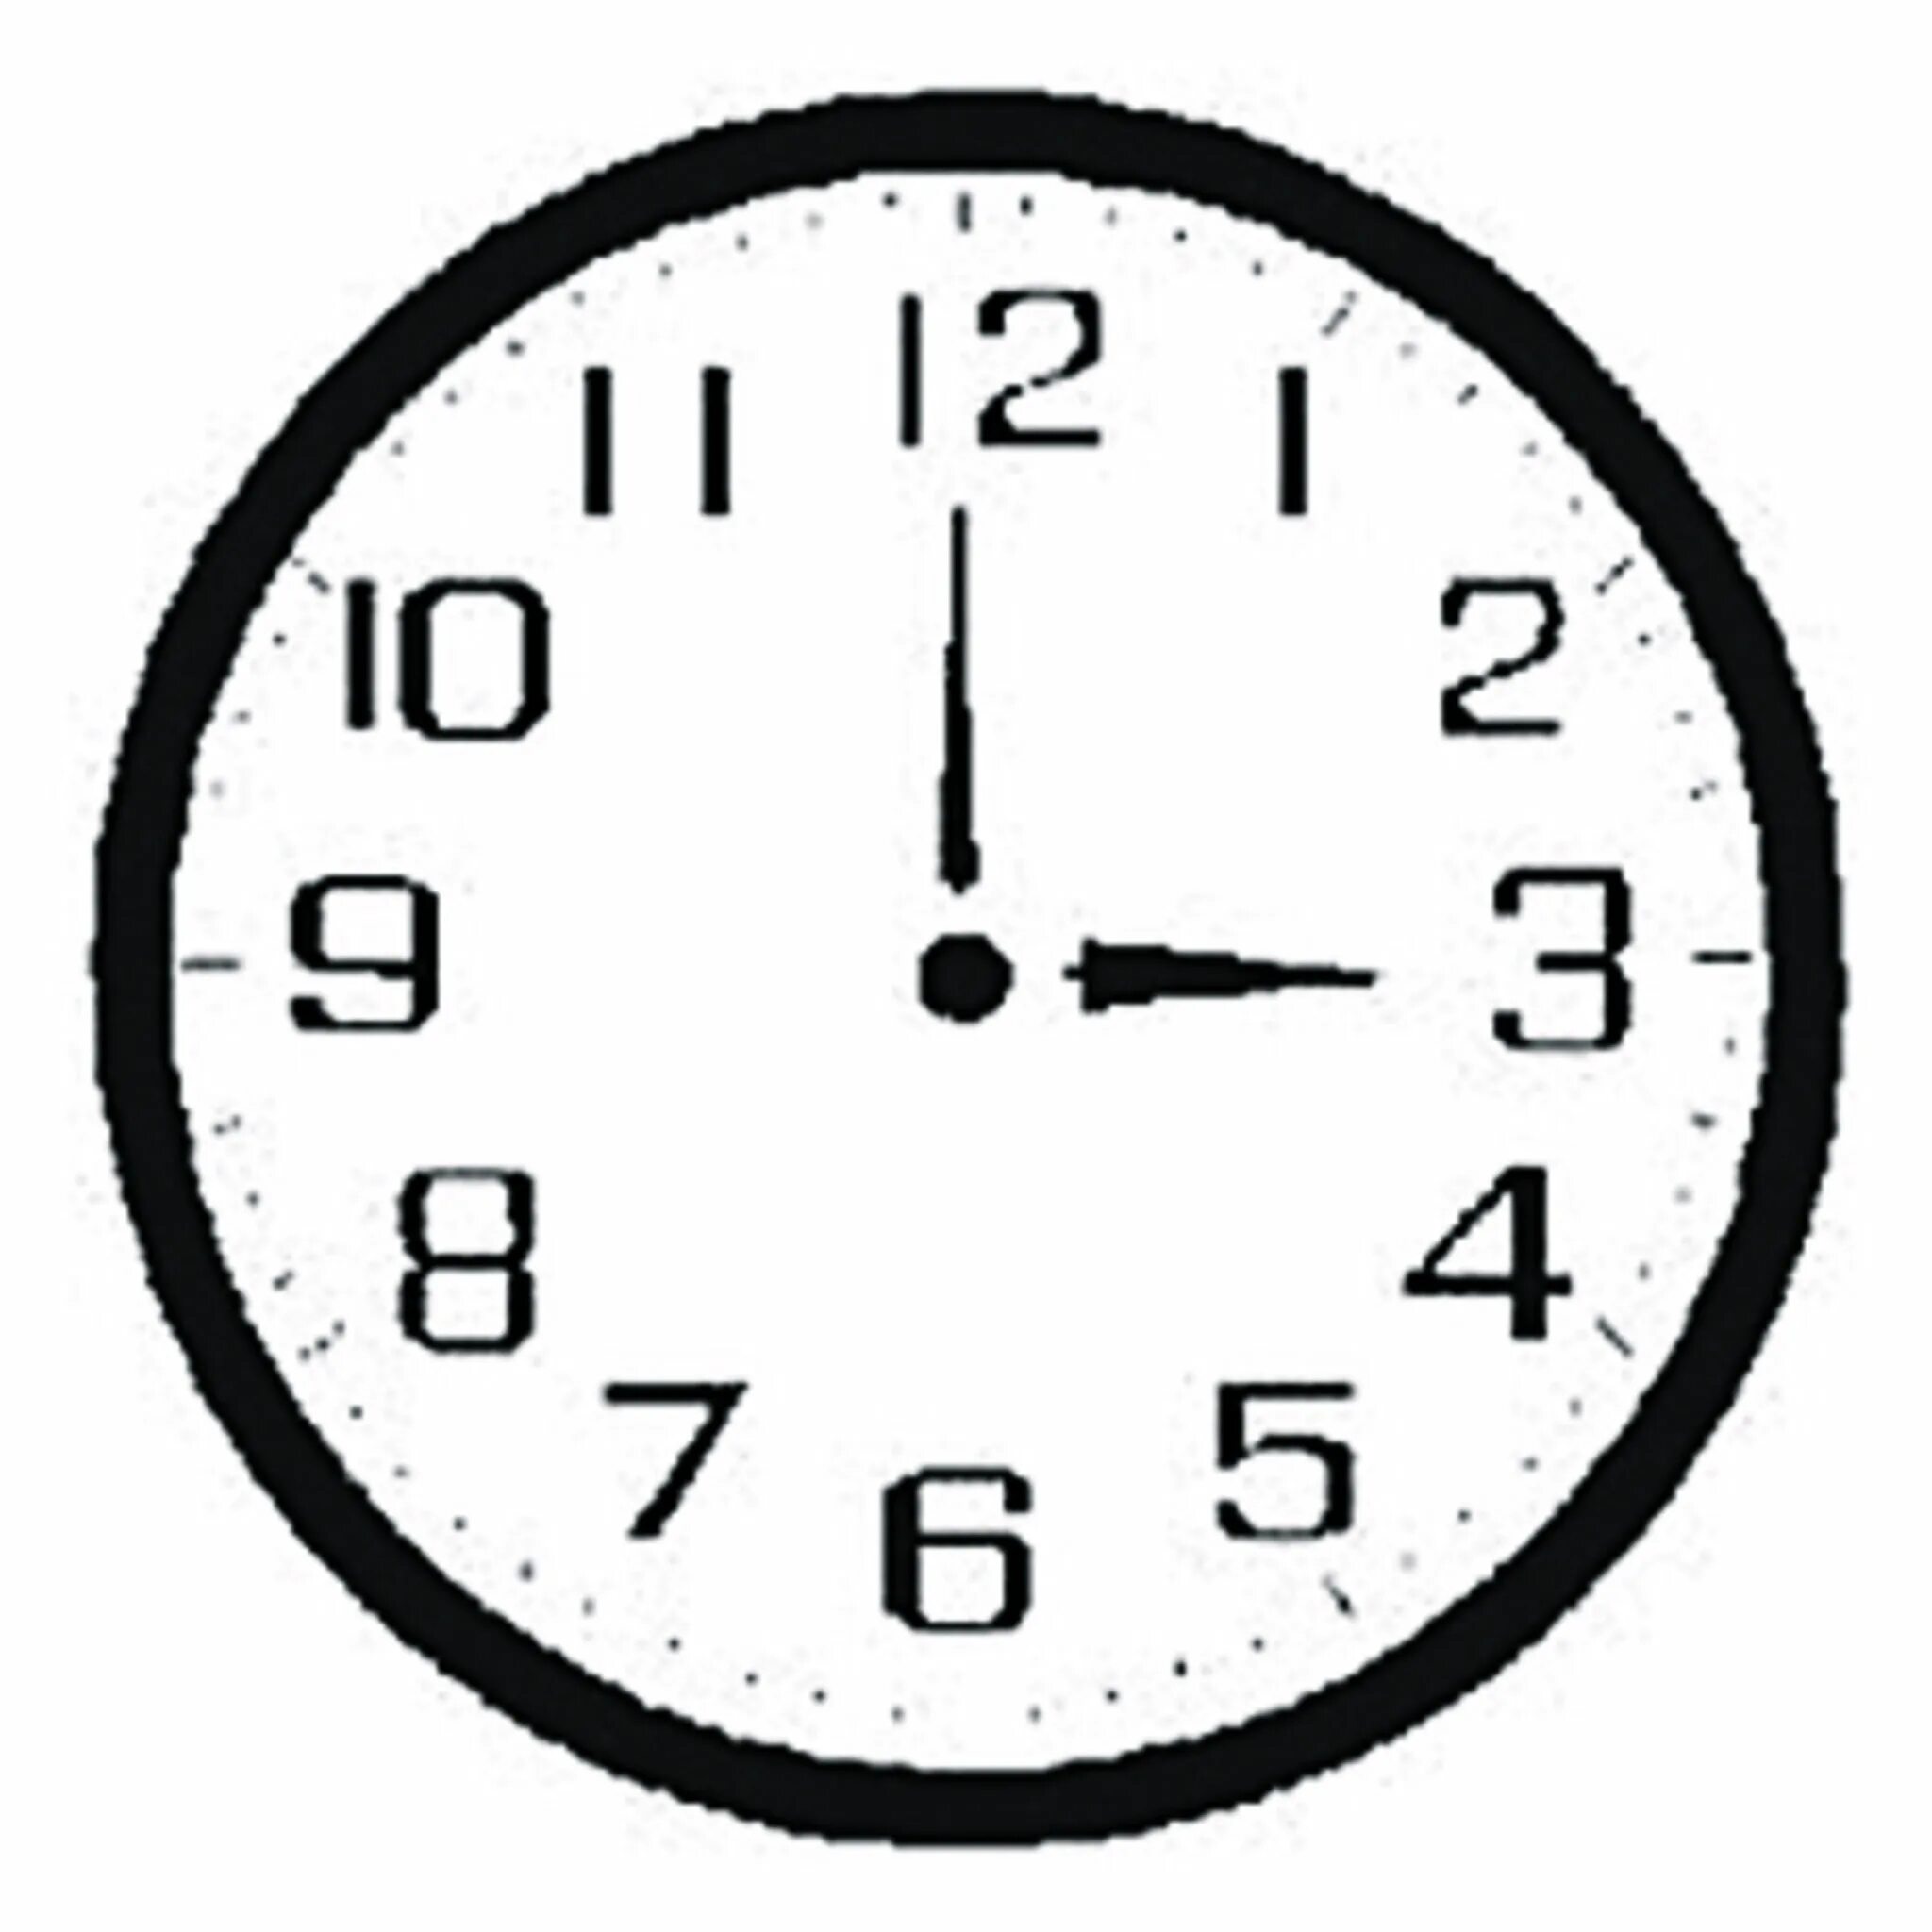 Три часа на циферблате. Часы со стрелками. Изображение часов со стрелками. Часы три часа. 15 часов 39